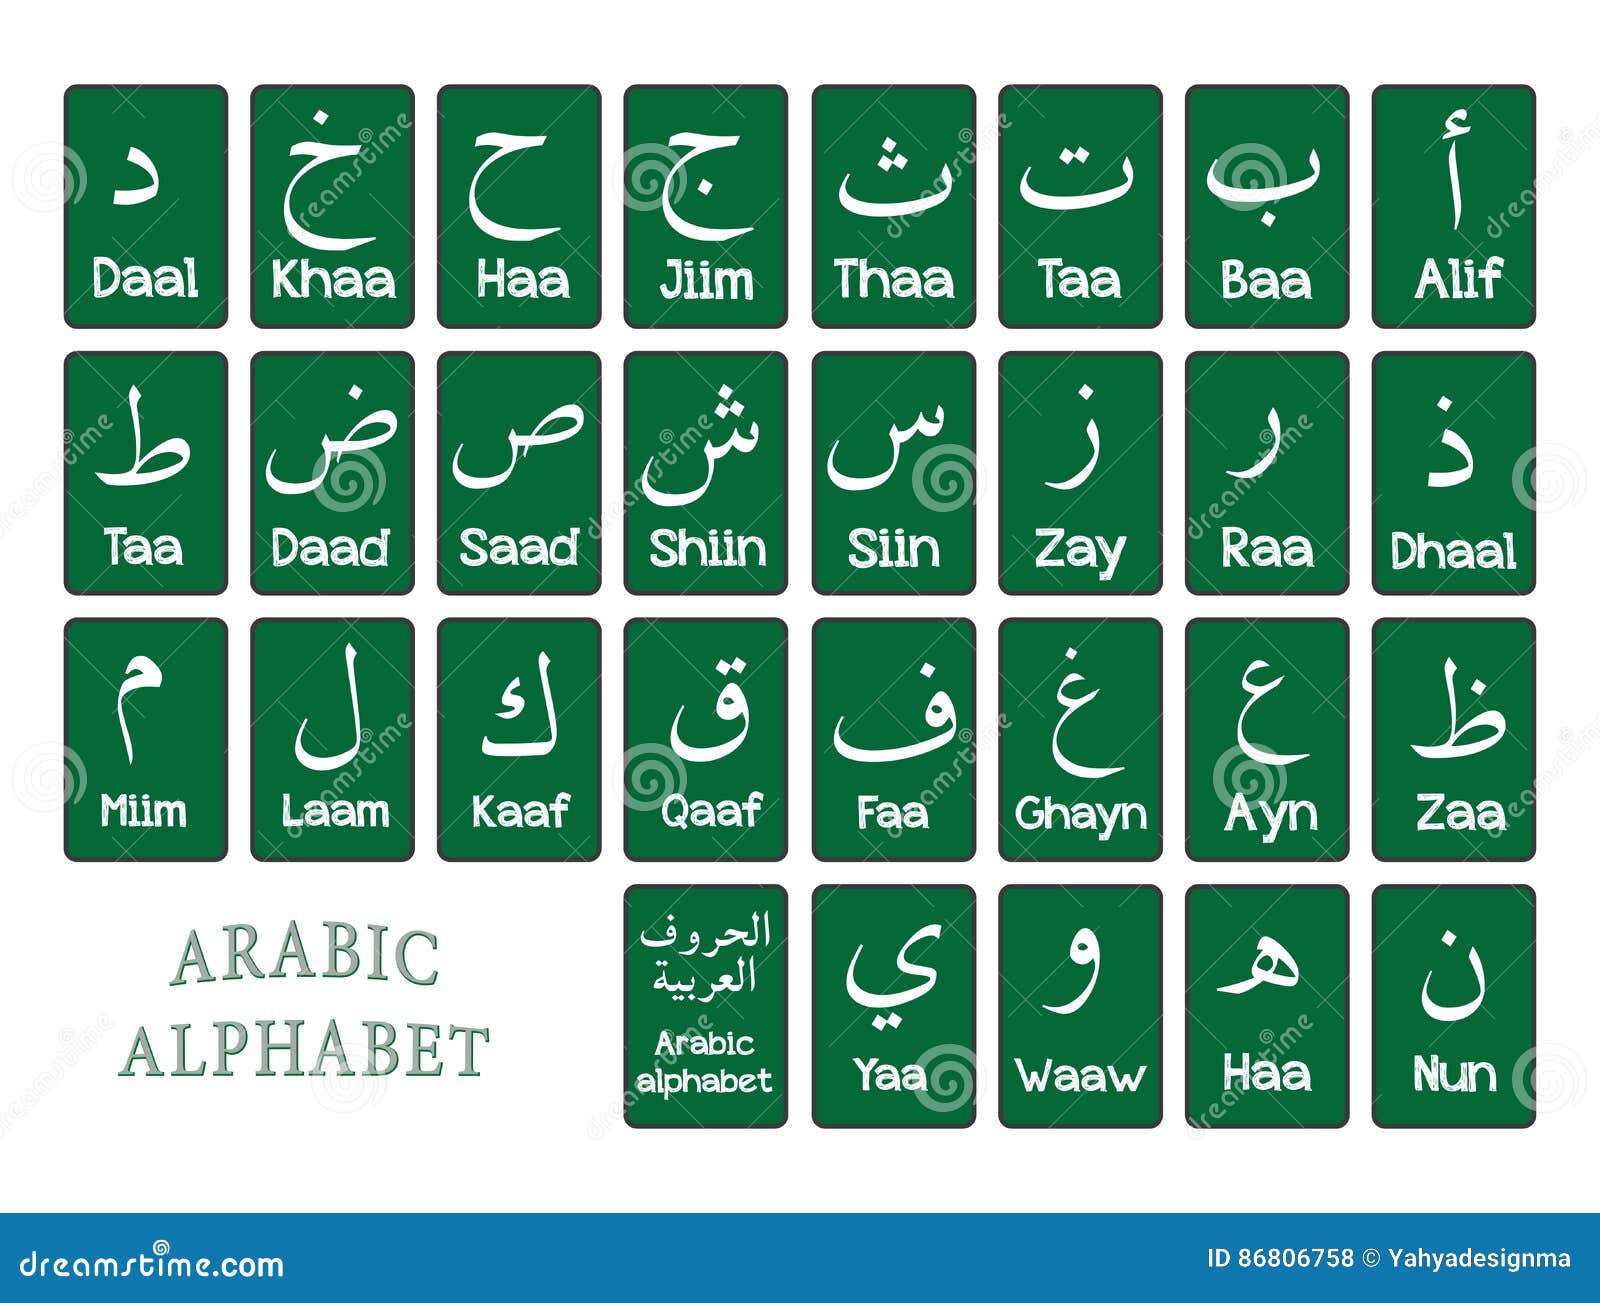 the arabic alphabet for beginner